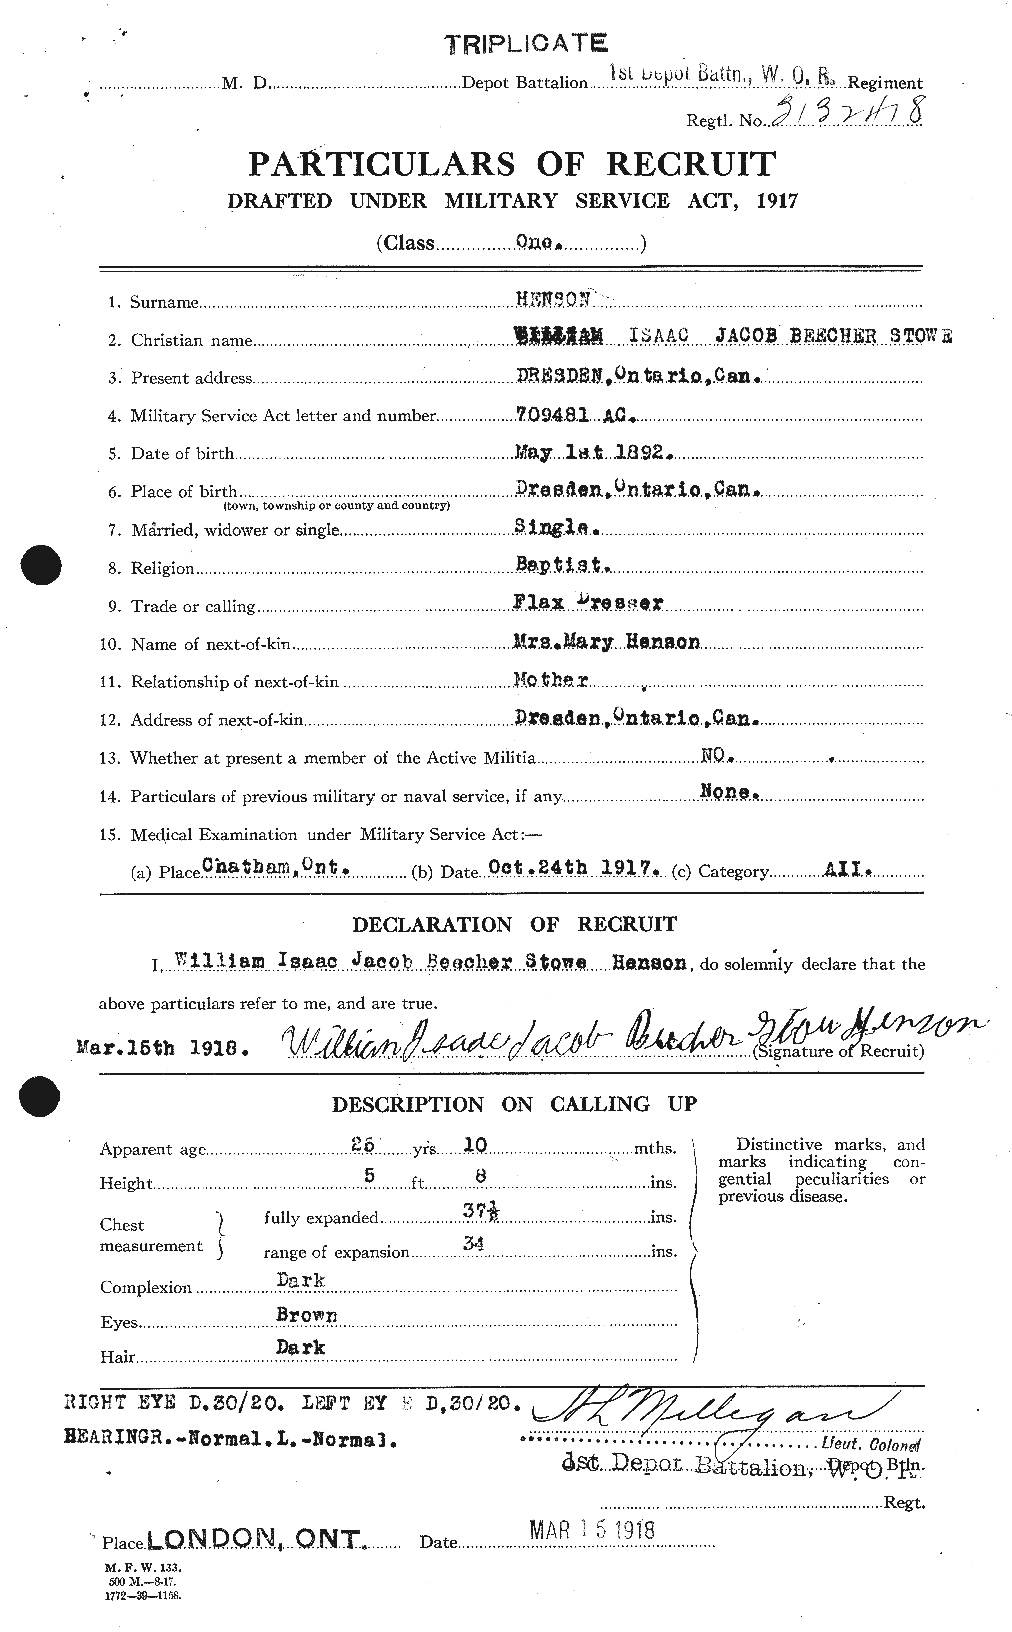 Dossiers du Personnel de la Première Guerre mondiale - CEC 389689a